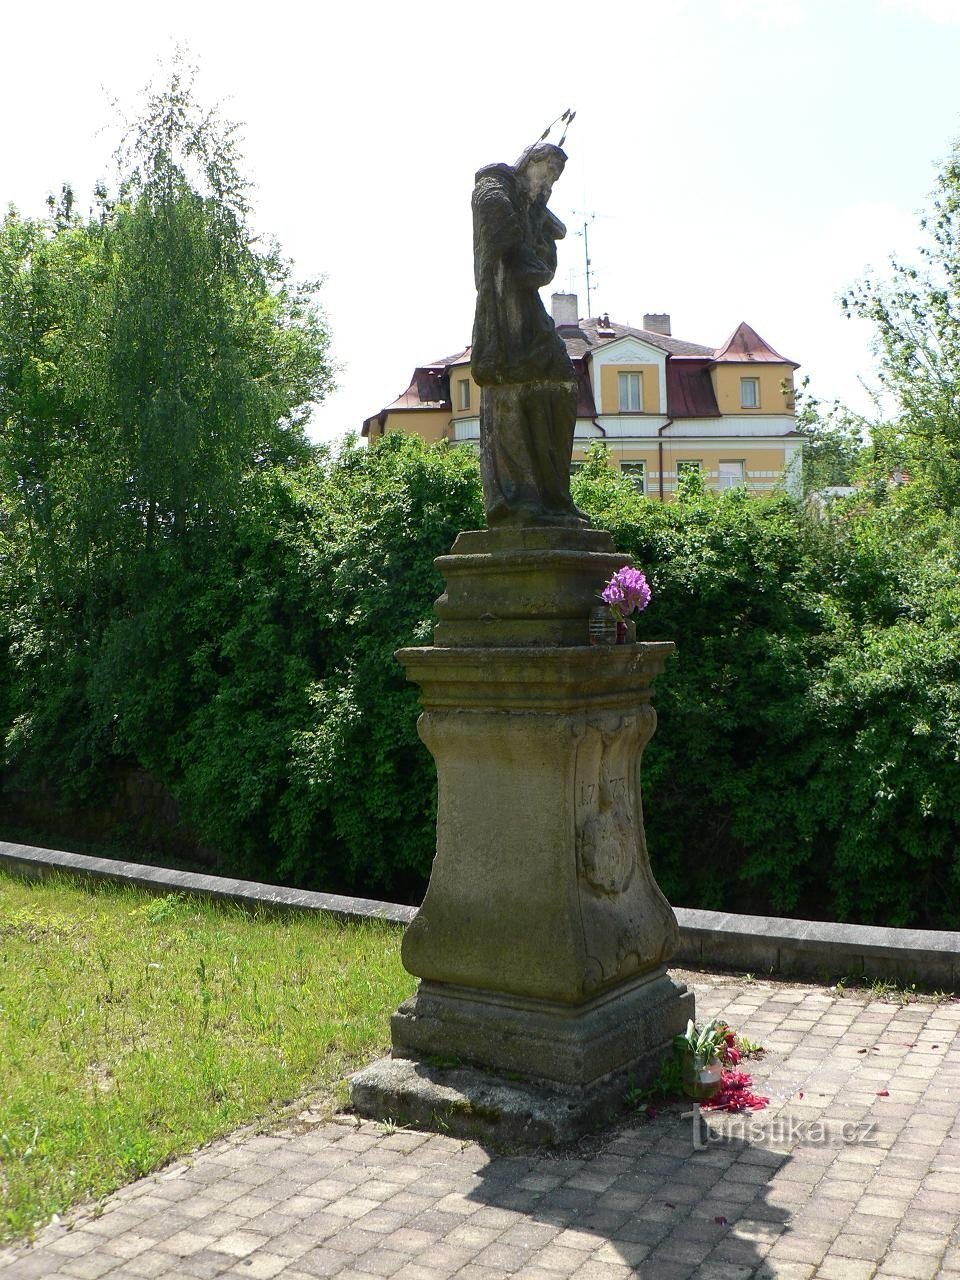 Františkovy Lázně, bức tượng của St. John of Nepomuk